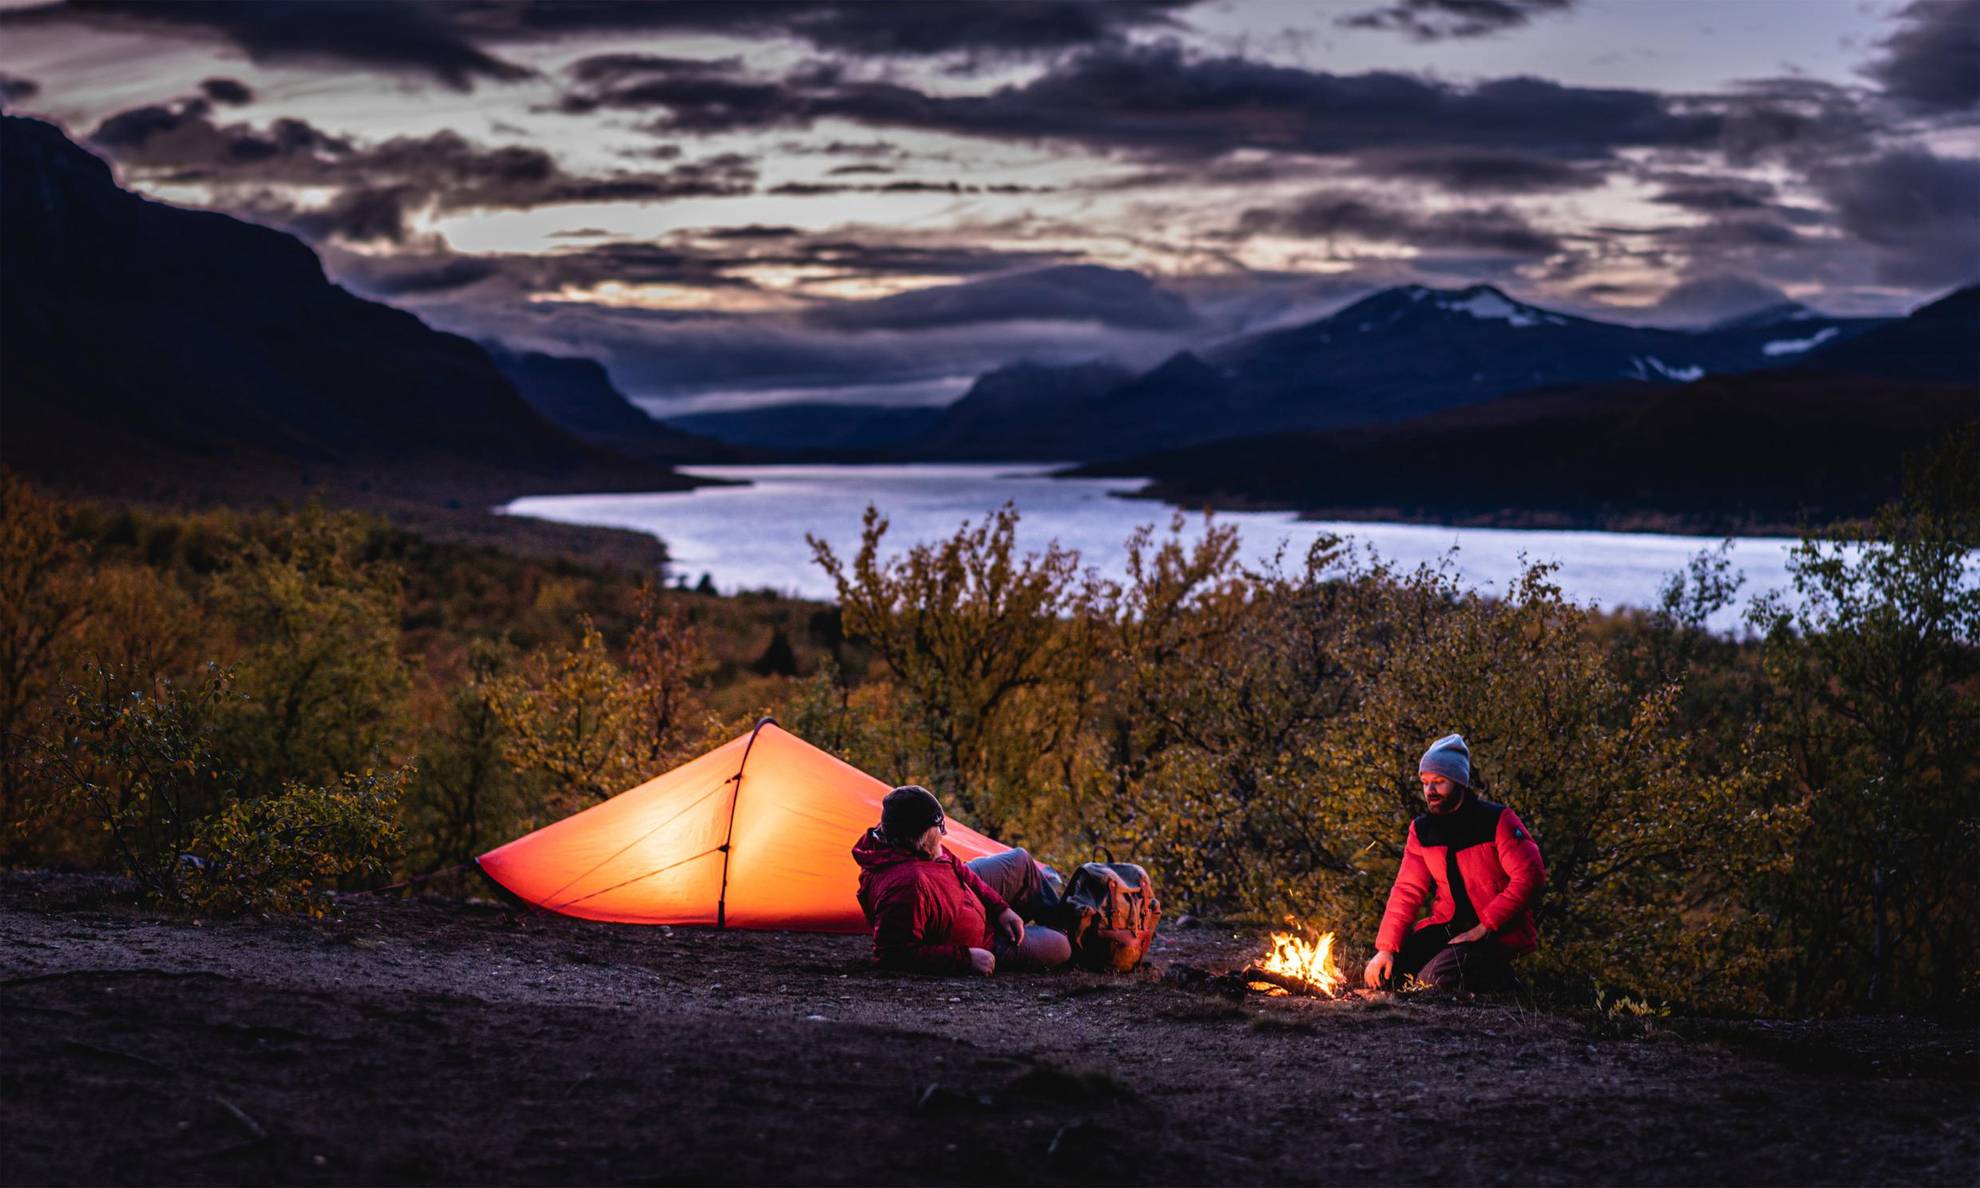 Zwei Menschen sitzen neben einem Zelt und einem Lagerfeuer. Im Hintergrund sind ein Fluss und Berge zu sehen.